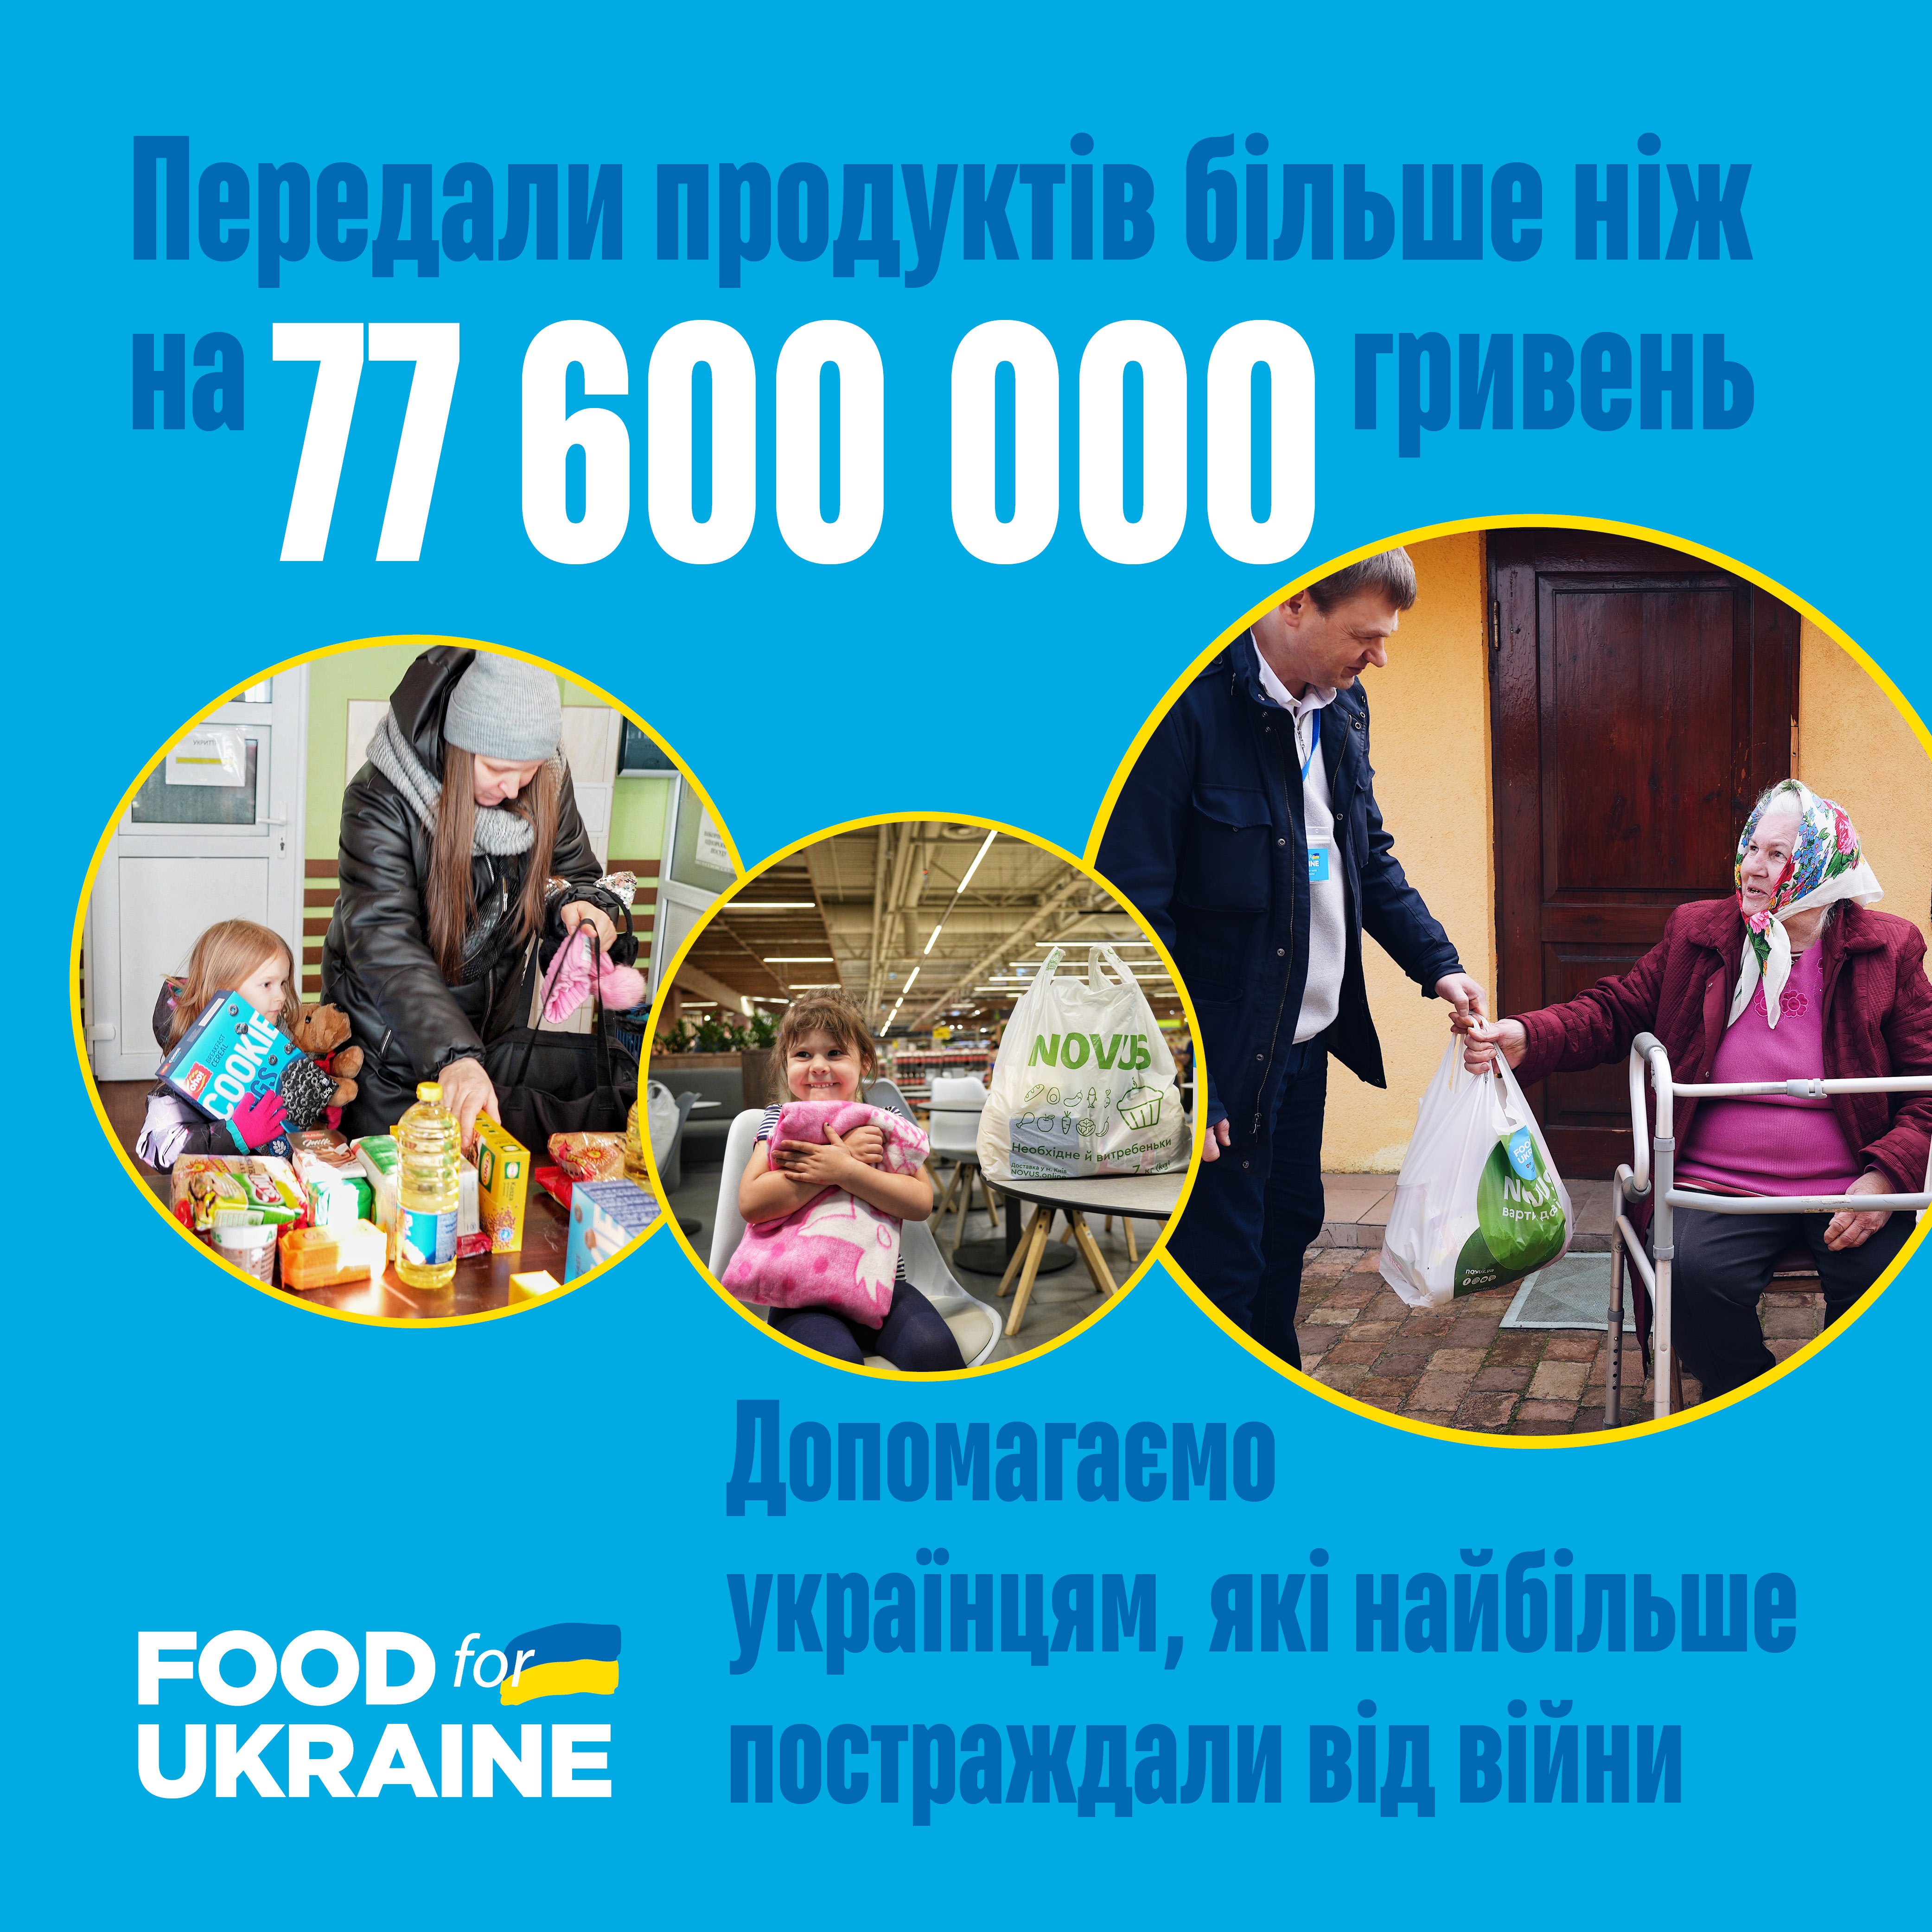 Передали продуктів українцям більше ніж на 77 600 000 гривень 